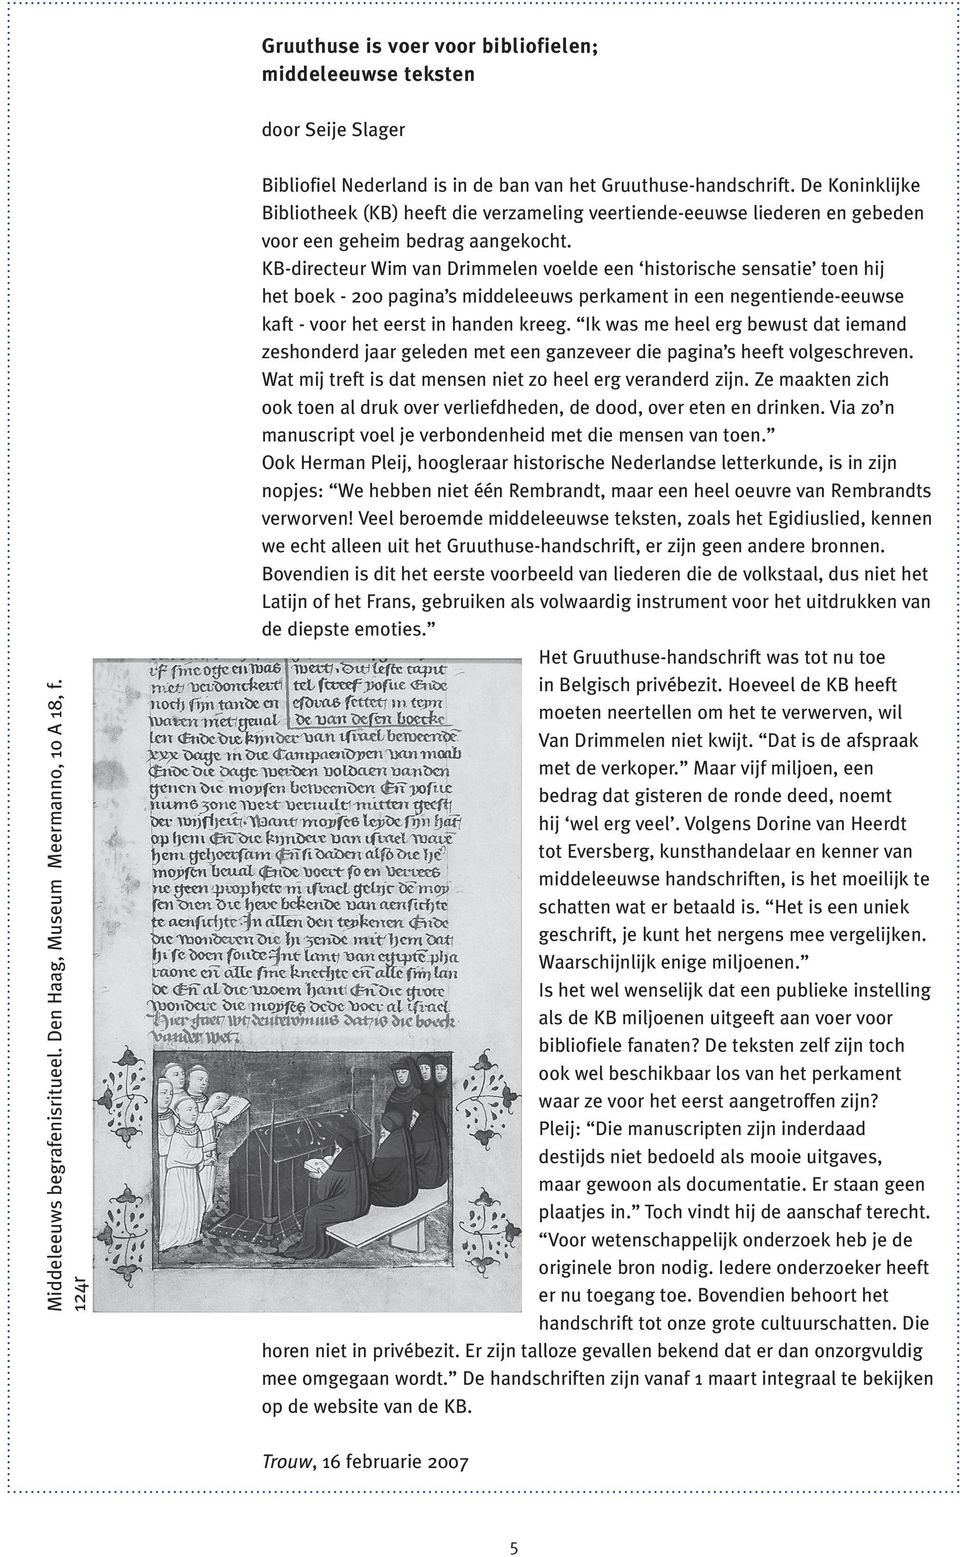 KB-directeur Wim van Drimmelen voelde een historische sensatie toen hij het boek - 200 pagina s middeleeuws perkament in een negentiende-eeuwse kaft - voor het eerst in handen kreeg.